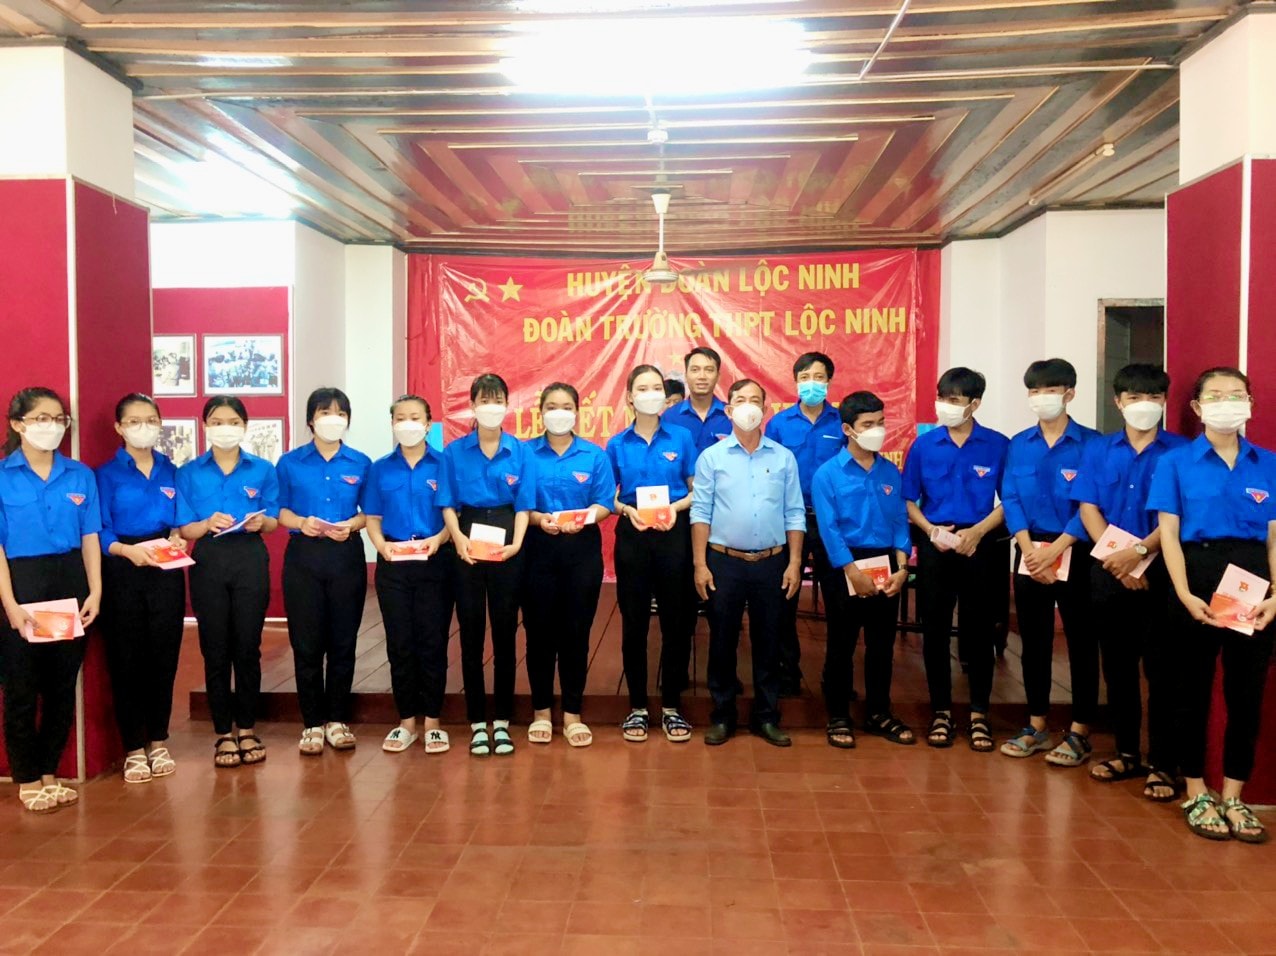 "Lễ kết nạp đoàn viên" cho 174 thanh niên ưu tú vào hàng ngũ Đoàn TNCS Hồ Chí Minh, nhân dịp kỷ niệm 132 năm ngày sinh chủ tịch Hồ Chí Minh (19/5/1890-19/5/2022)